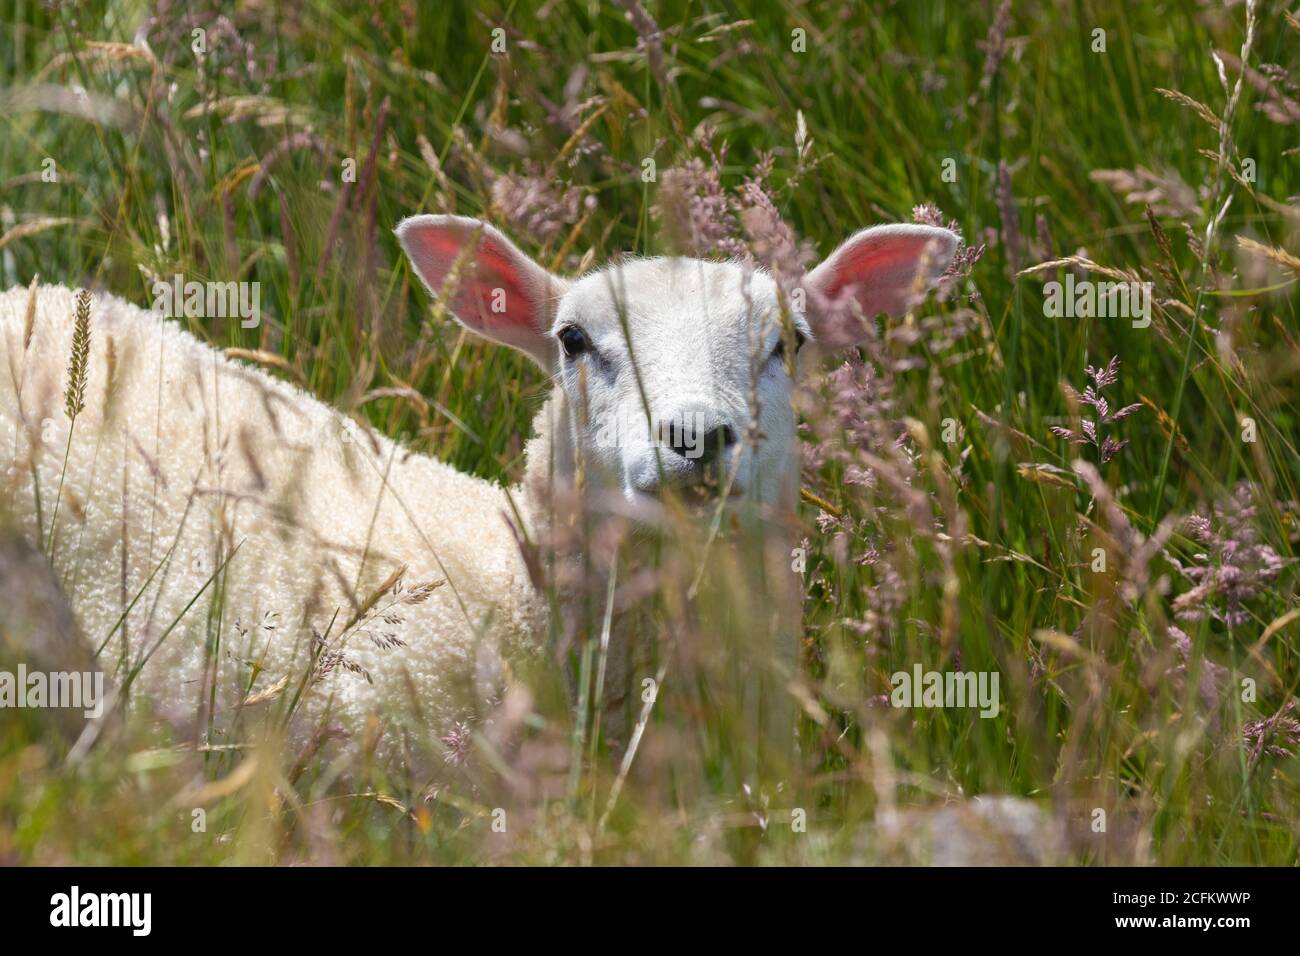 A sheep with pink ears hidden amongst long grass, Fife, Scotland Stock Photo